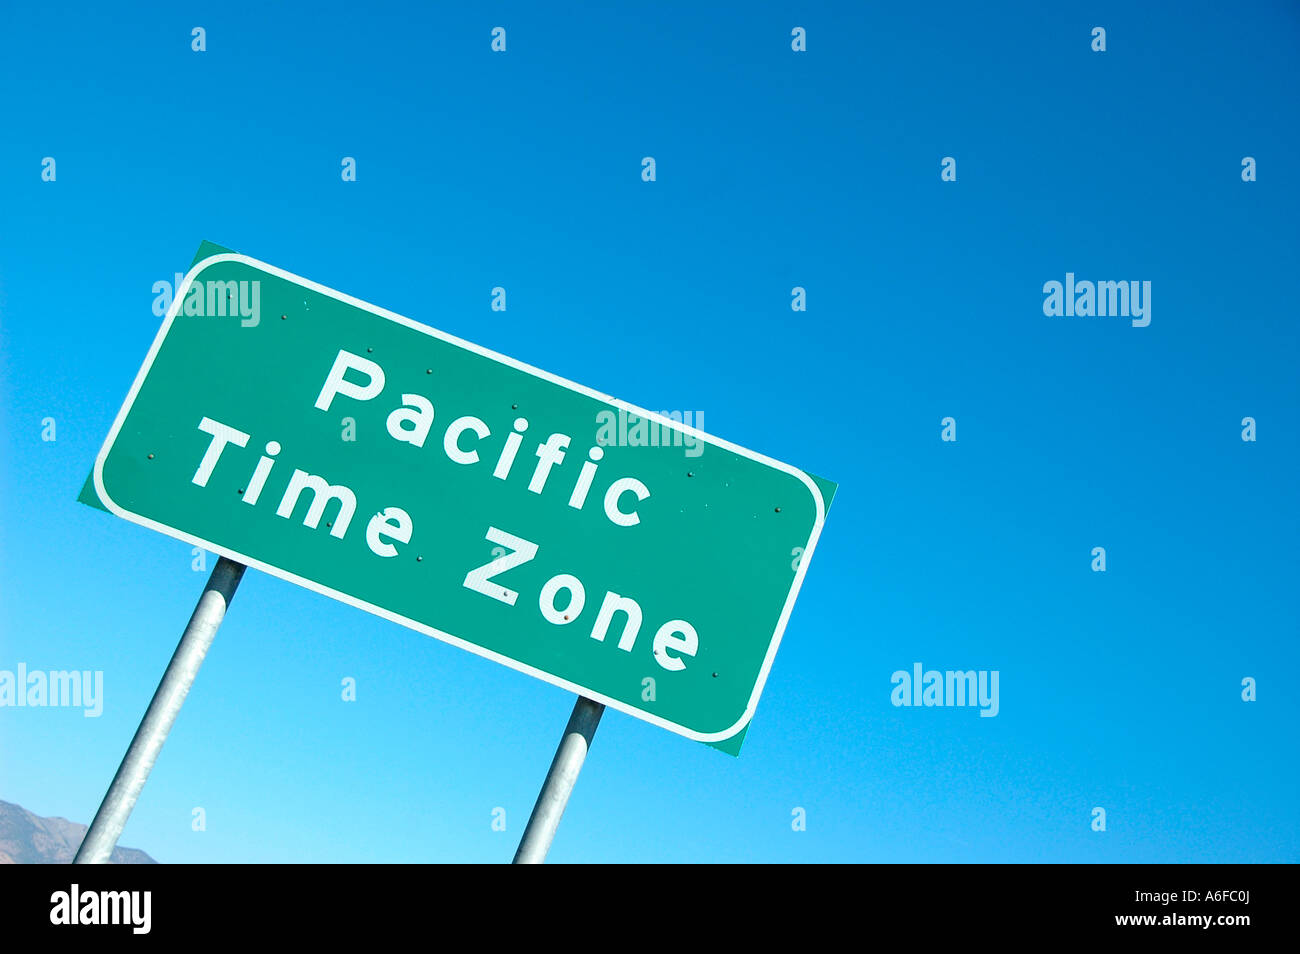 Pacific Time Zone als Sie gehen in Nevada auf der Interstate 80 in Wendover, Utah Stockfoto